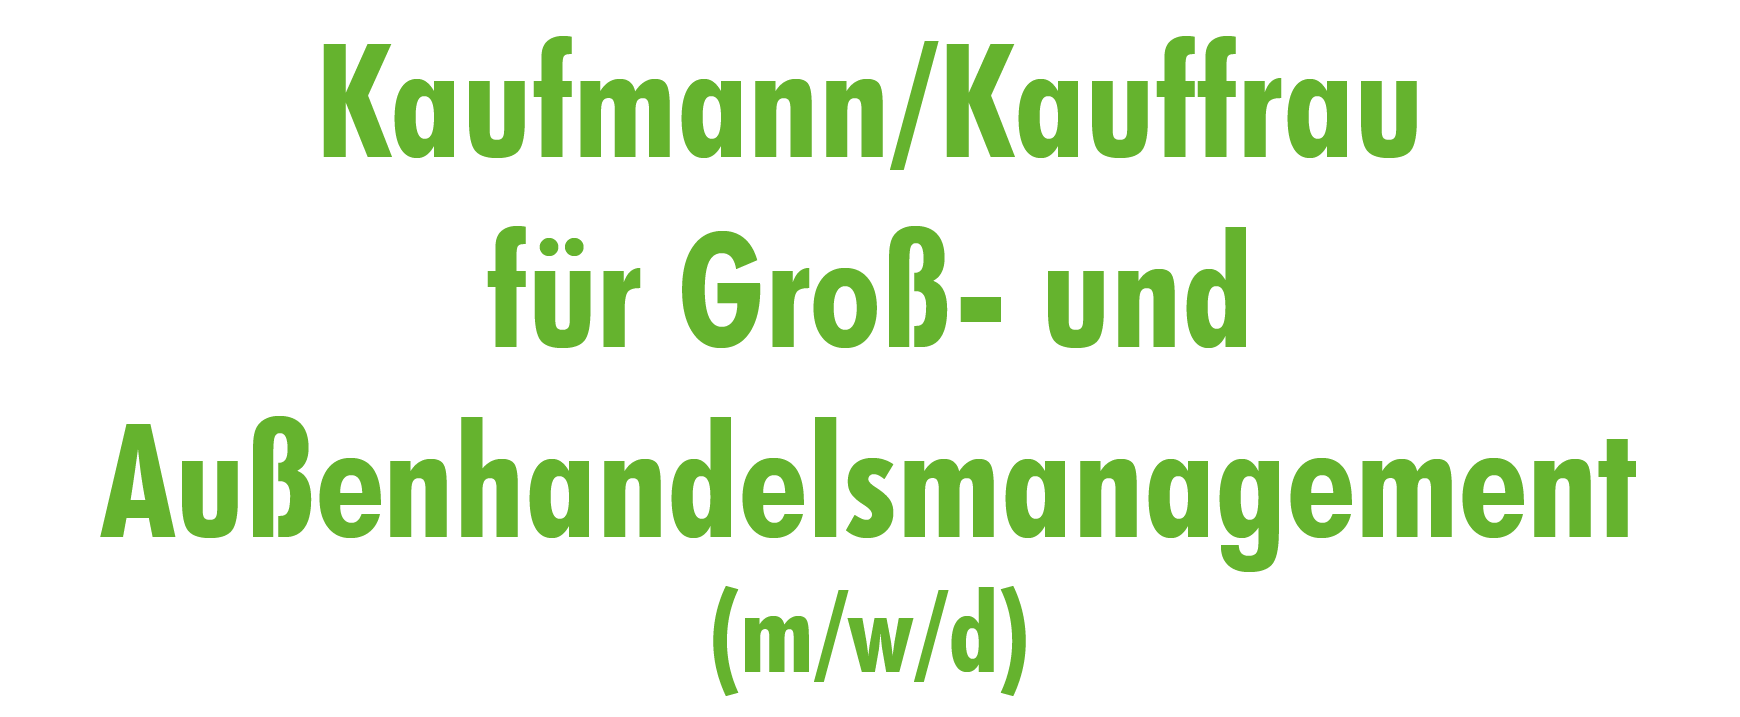 Kaufmann/Kauffrau für Groß- und Außenhandelsmanagement (m/w/d)